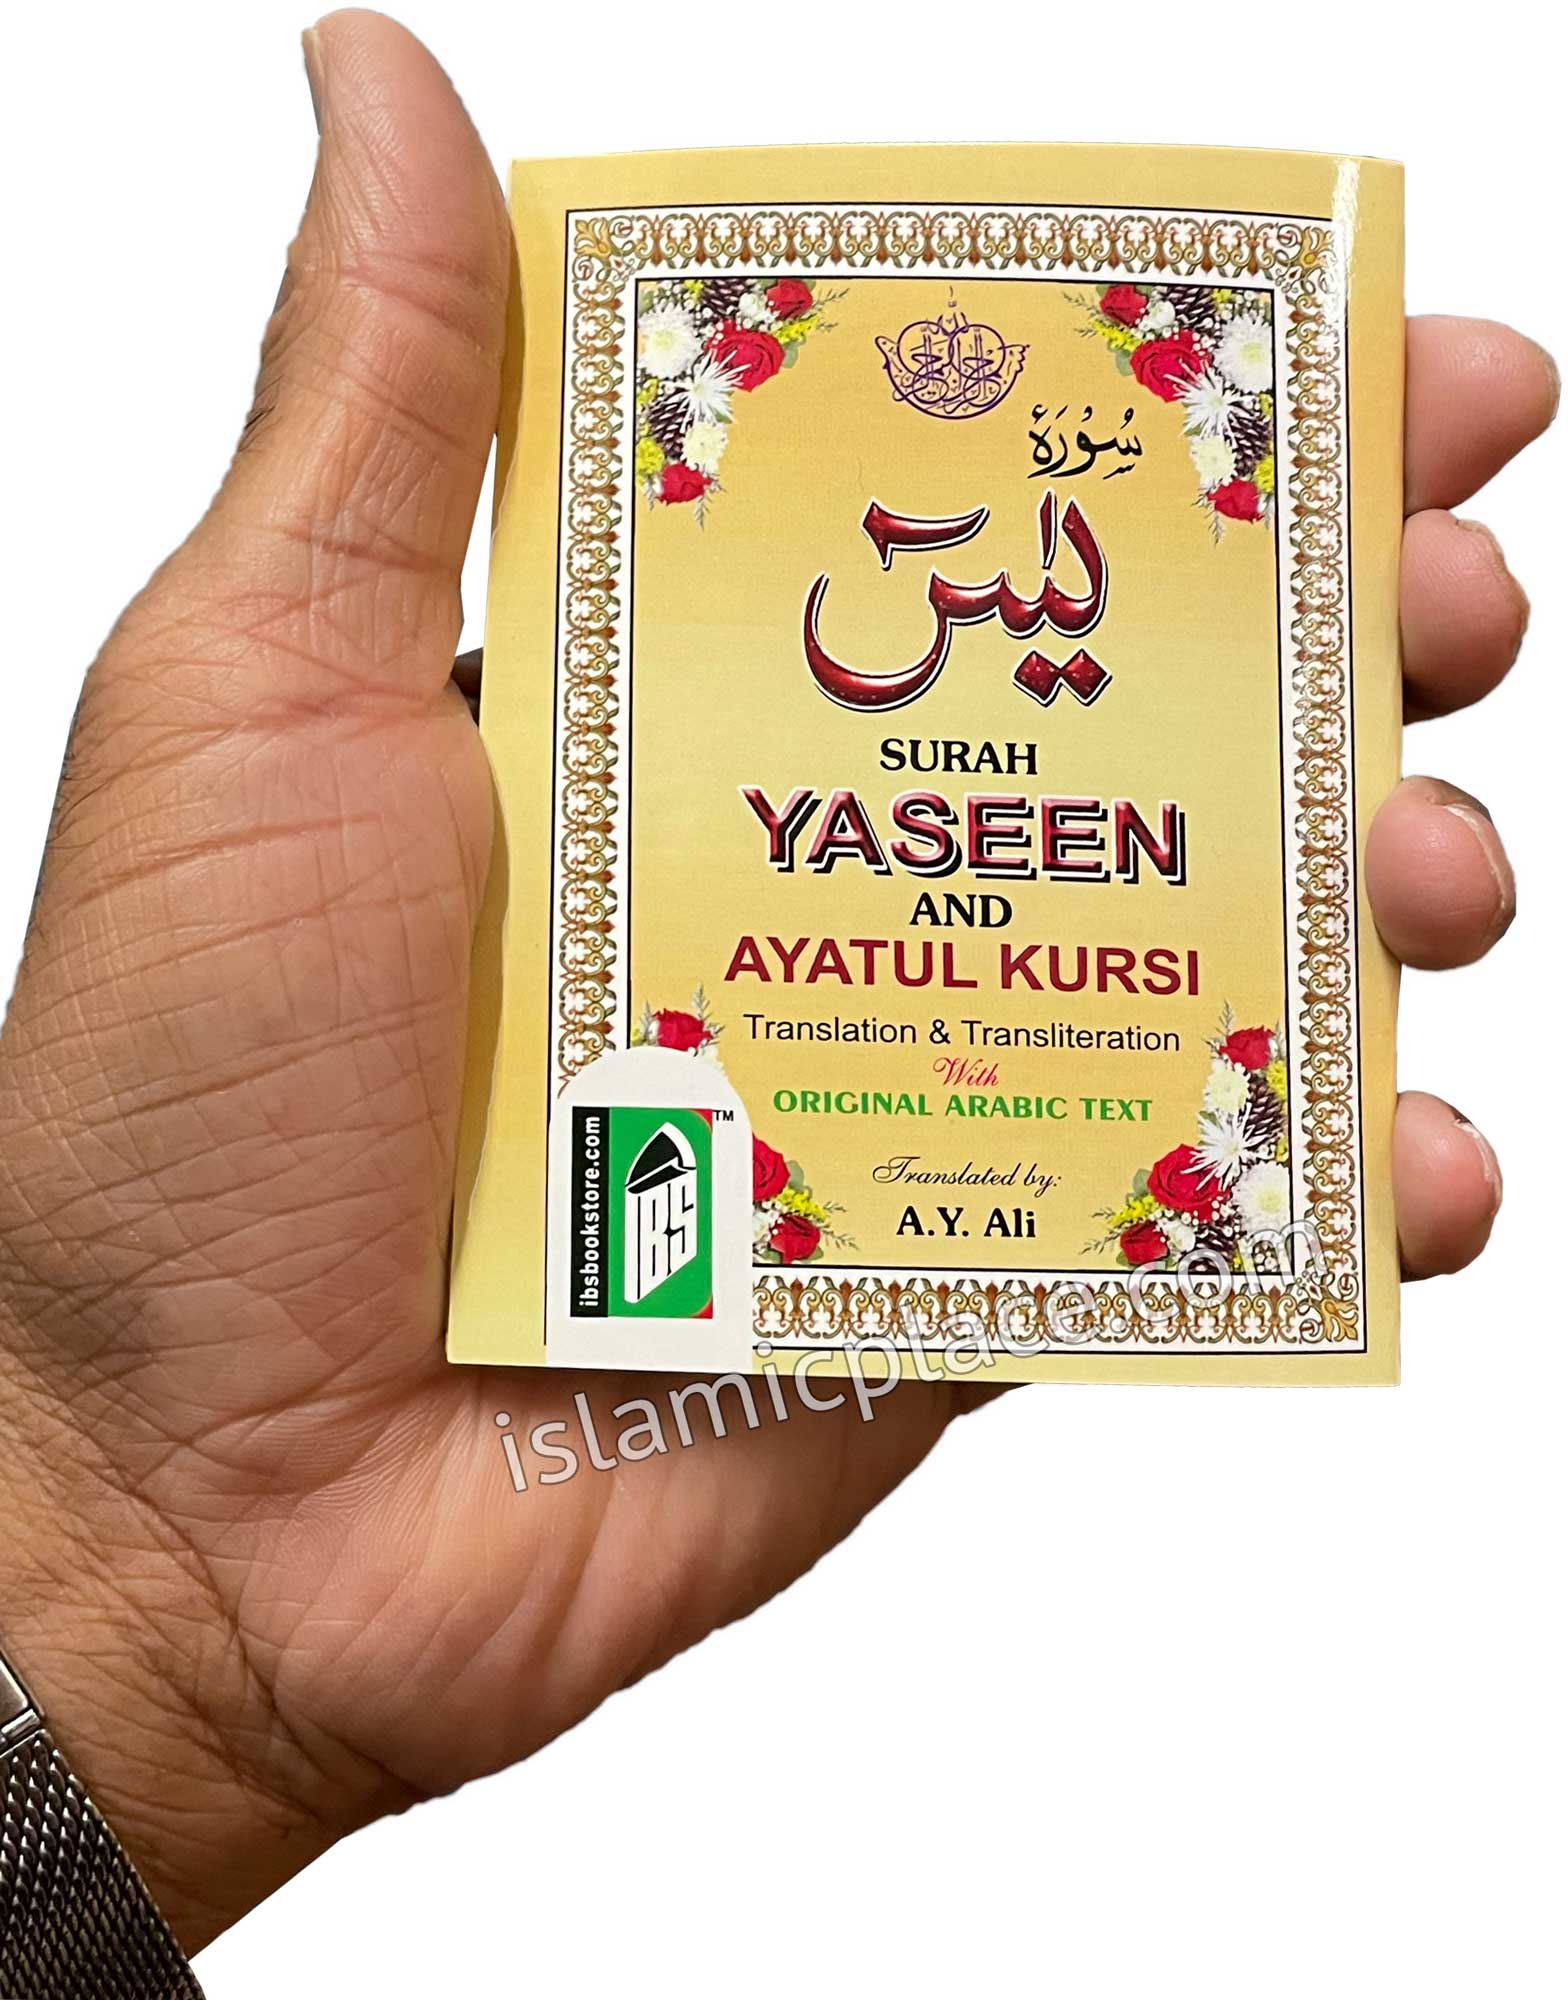 Surah Yaseen and Ayatul Kursi (Arabic, English and Transliteration) pocket size